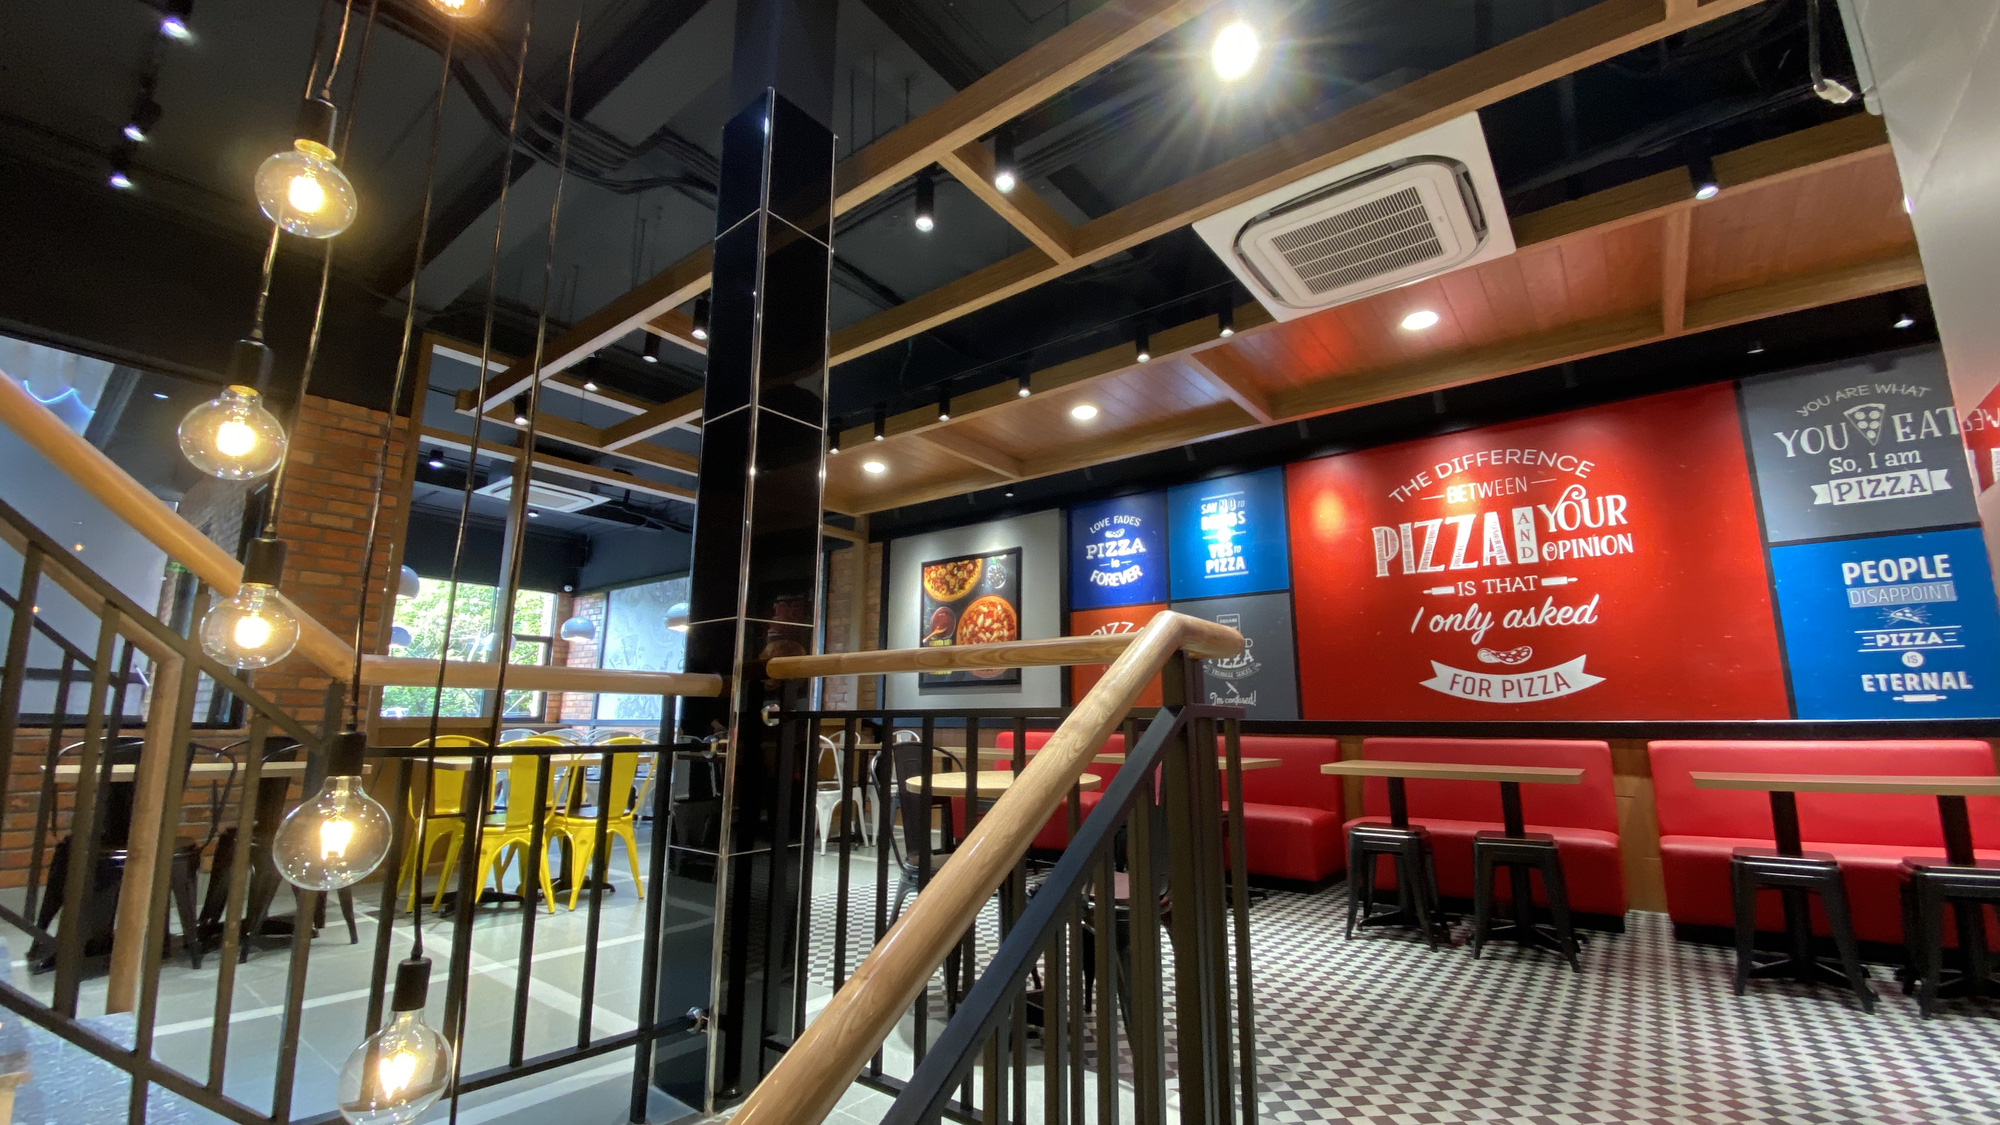 Domino’s – Thương hiệu Pizza hàng đầu thế giới đã “hạ cánh” tại Biên Hoà, đánh dấu sự phát triển chuỗi hệ thống Pizza Mỹ tại các tỉnh thành - Ảnh 4.